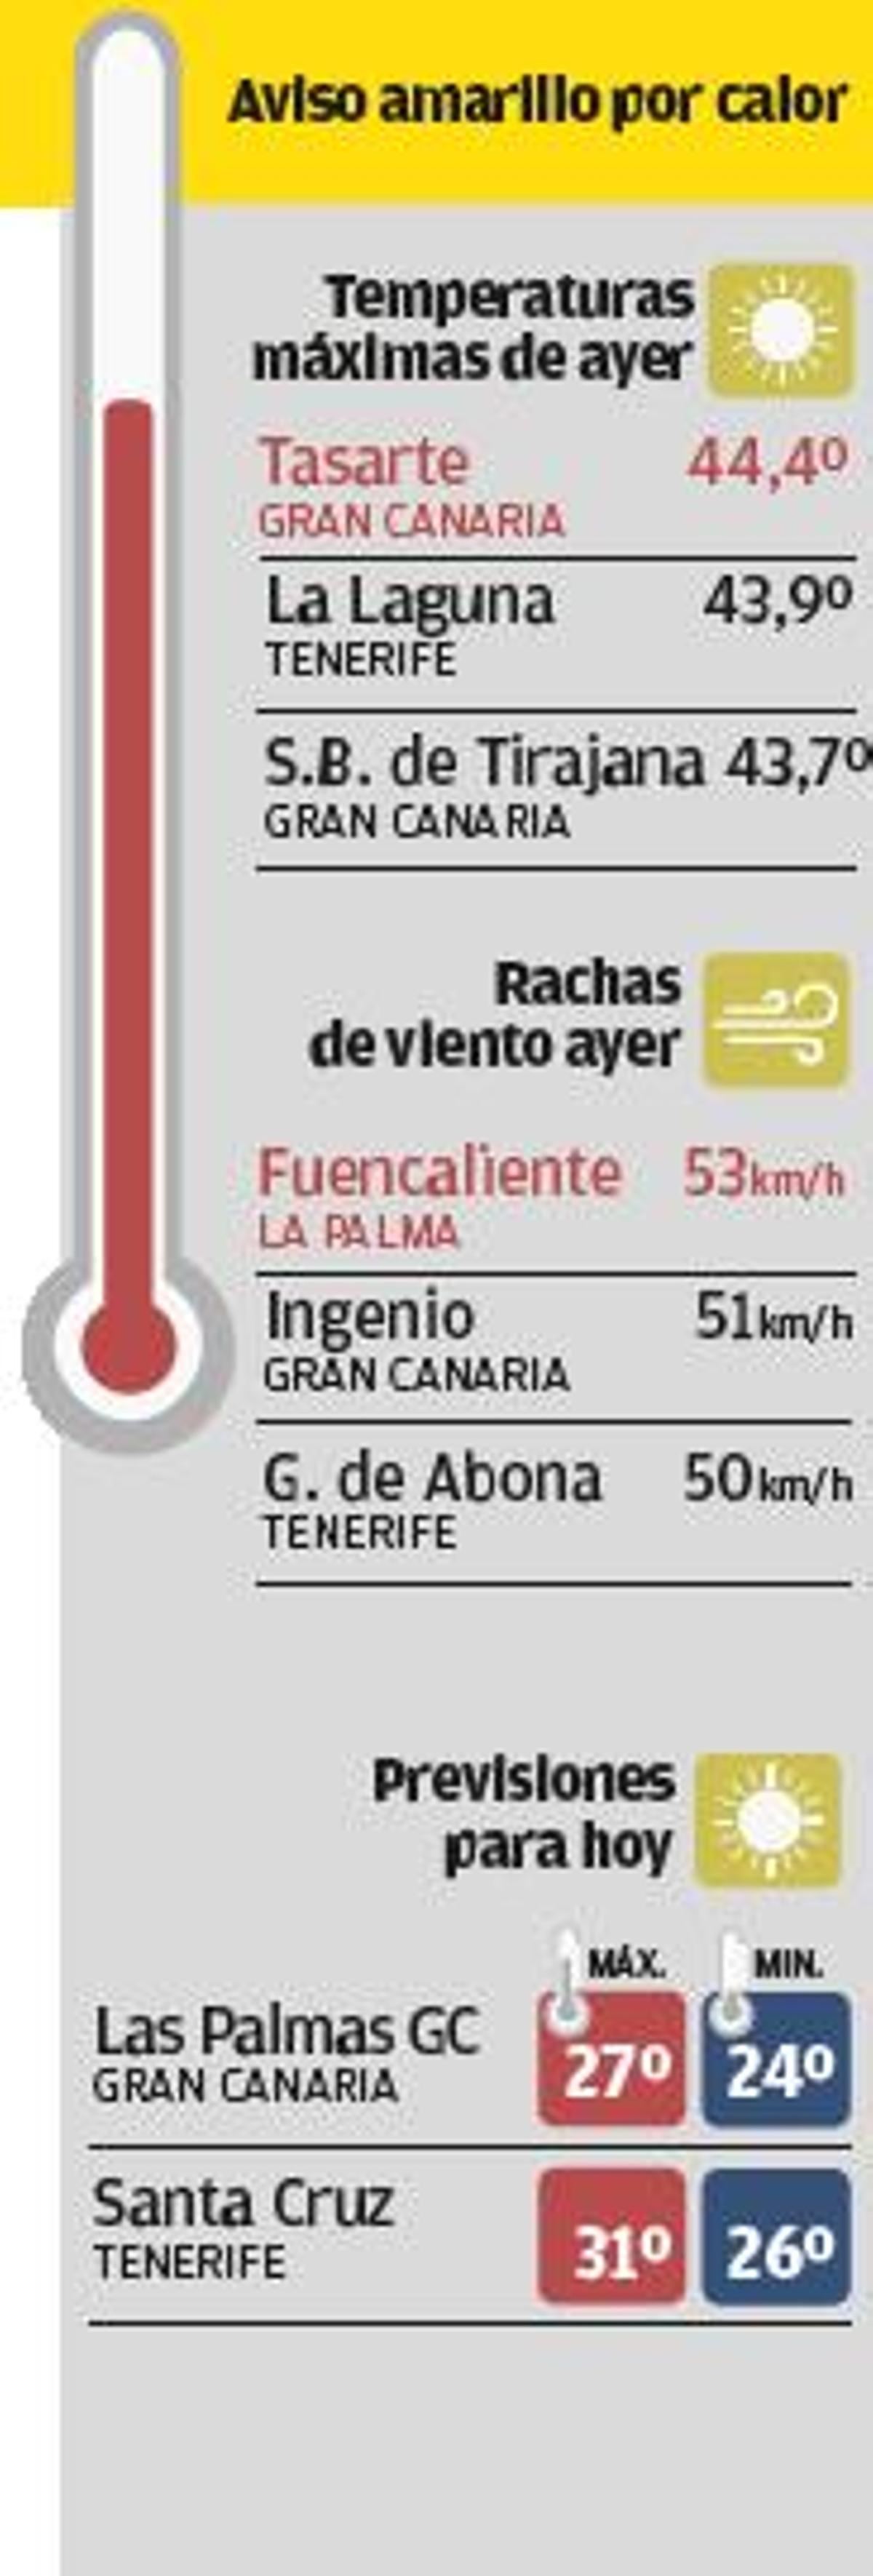 Dos senderistas mueren en plena ola de calor en Morro Jable y Tenerife